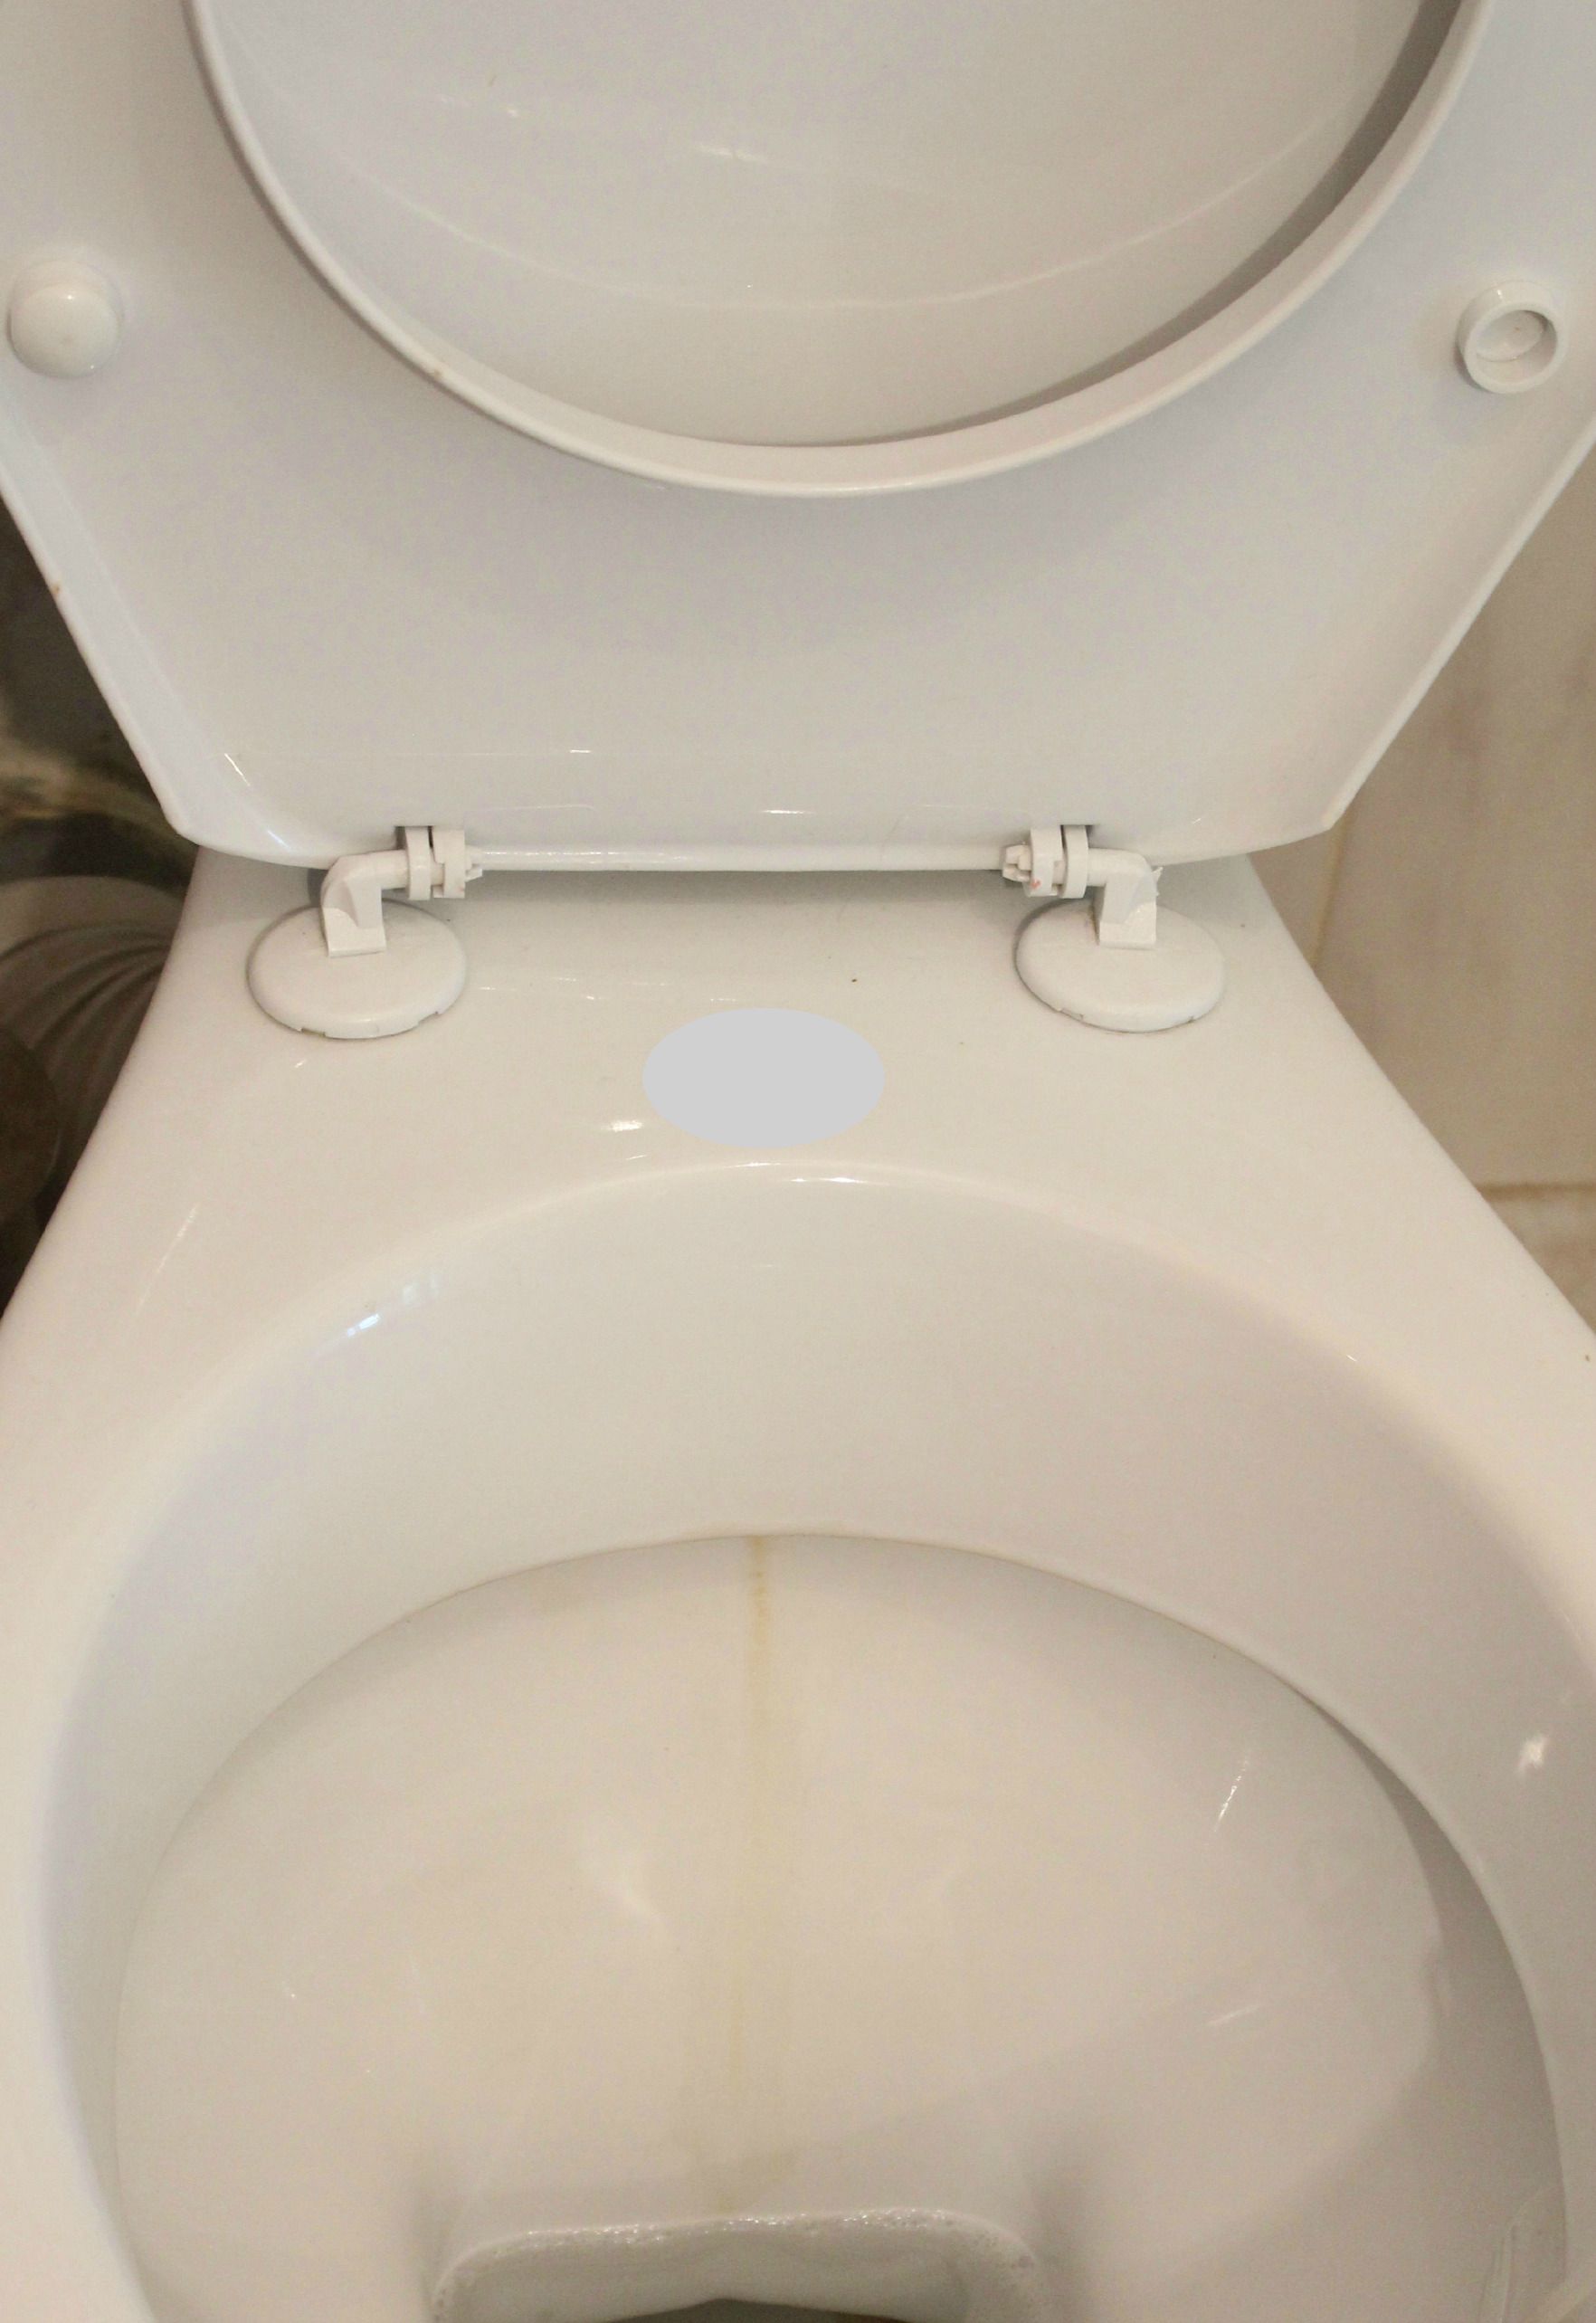 toilet cleaner alternative